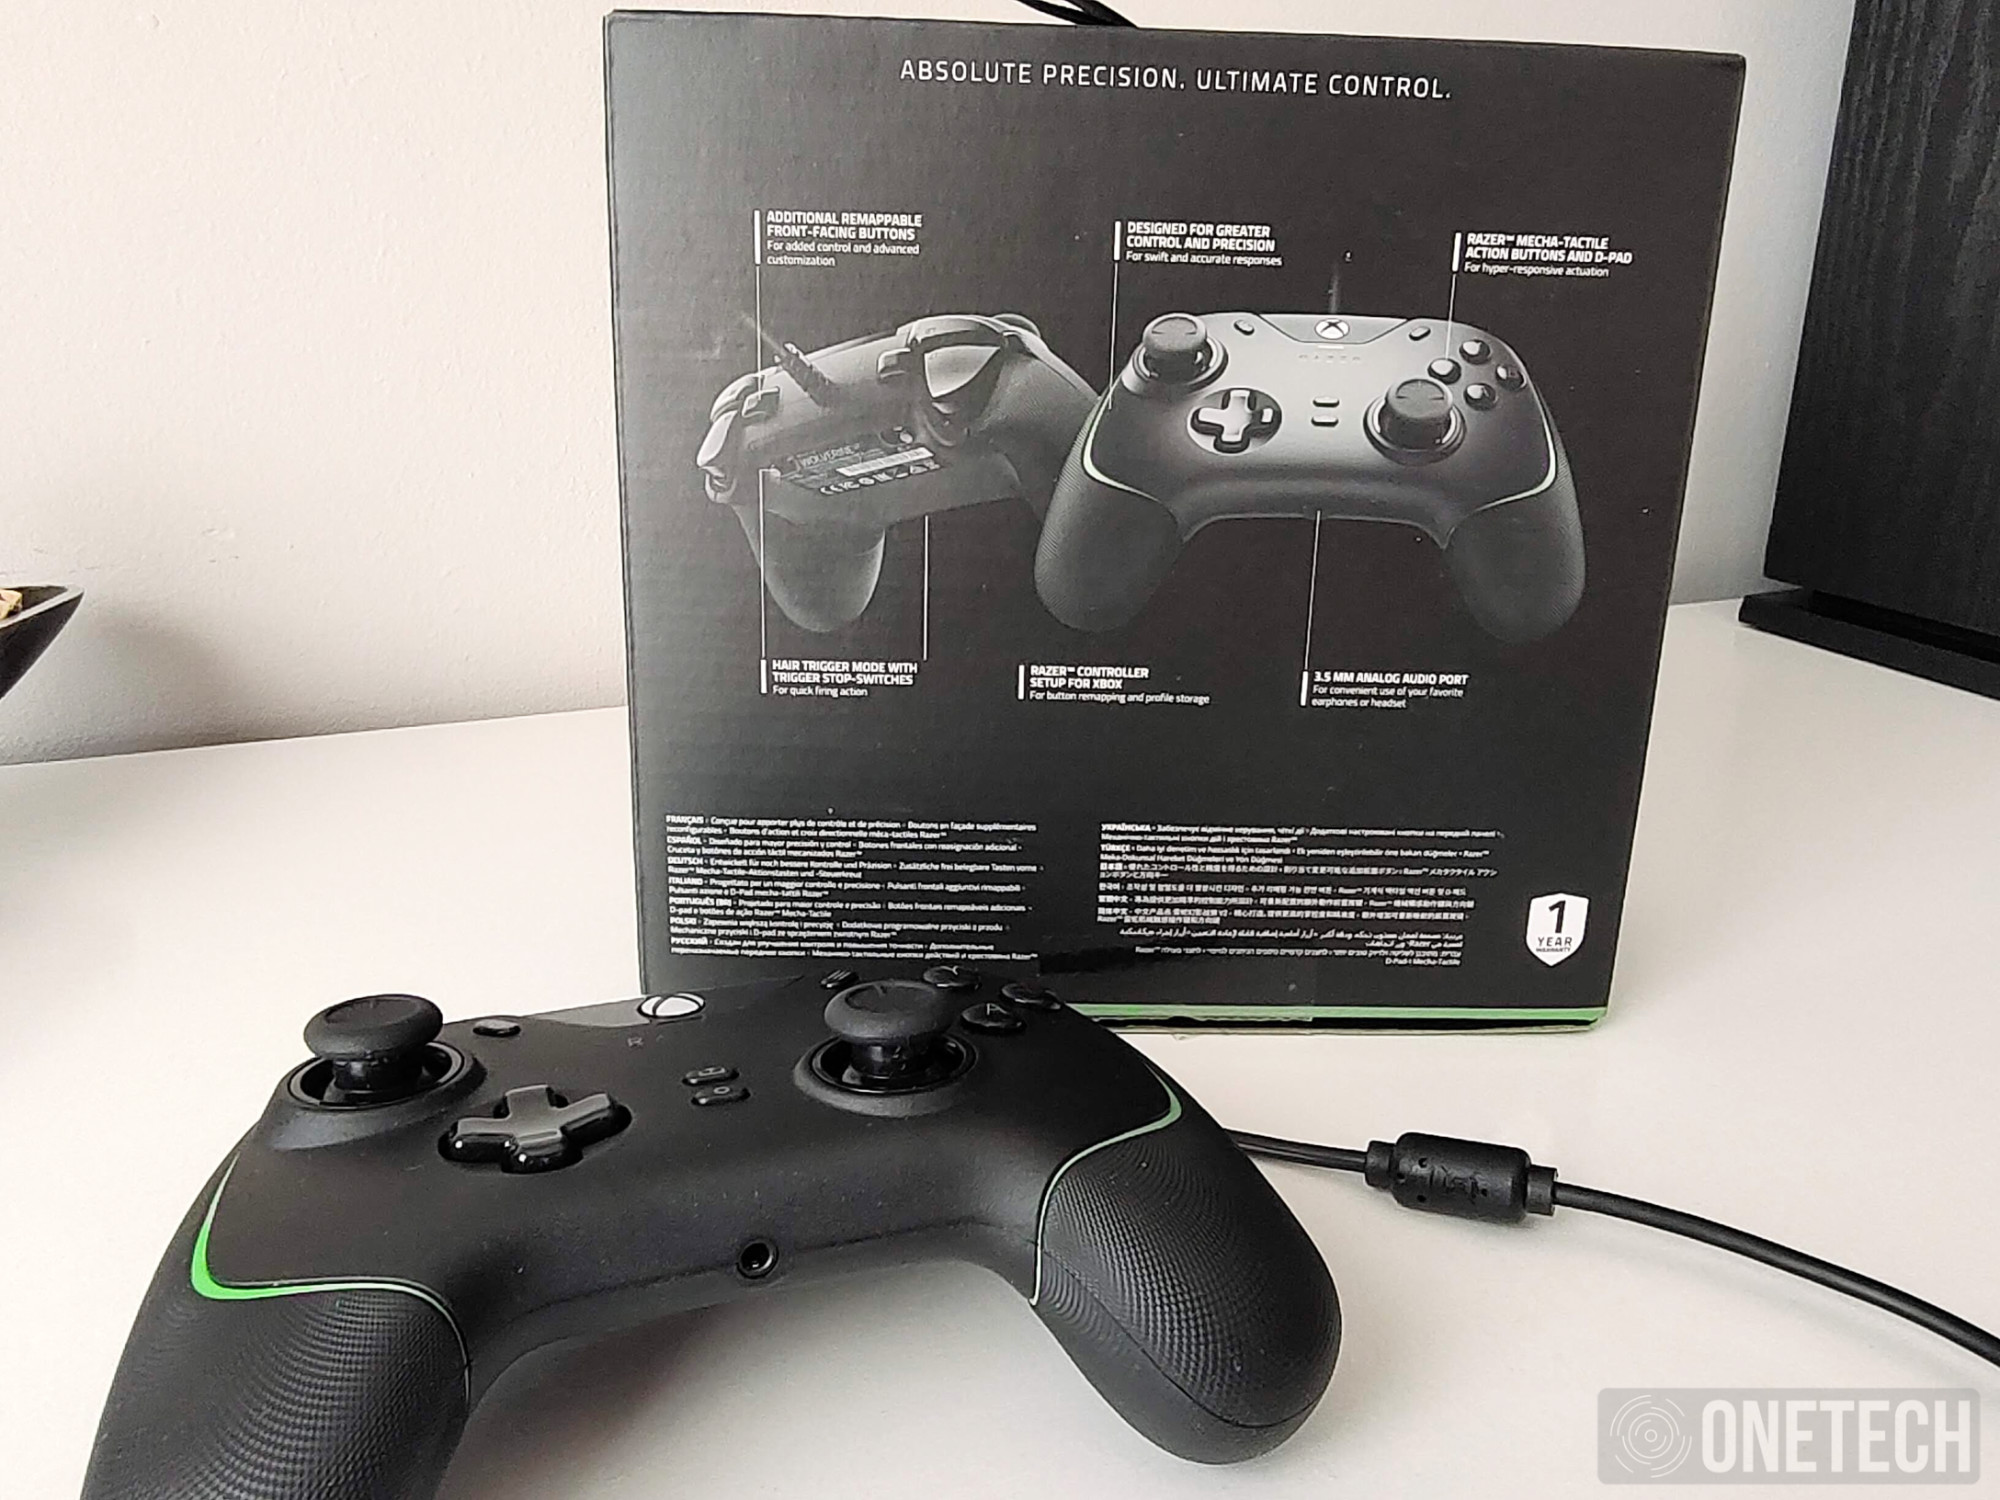 El nuevo mando de Xbox ya es oficial y el color te va a encantar